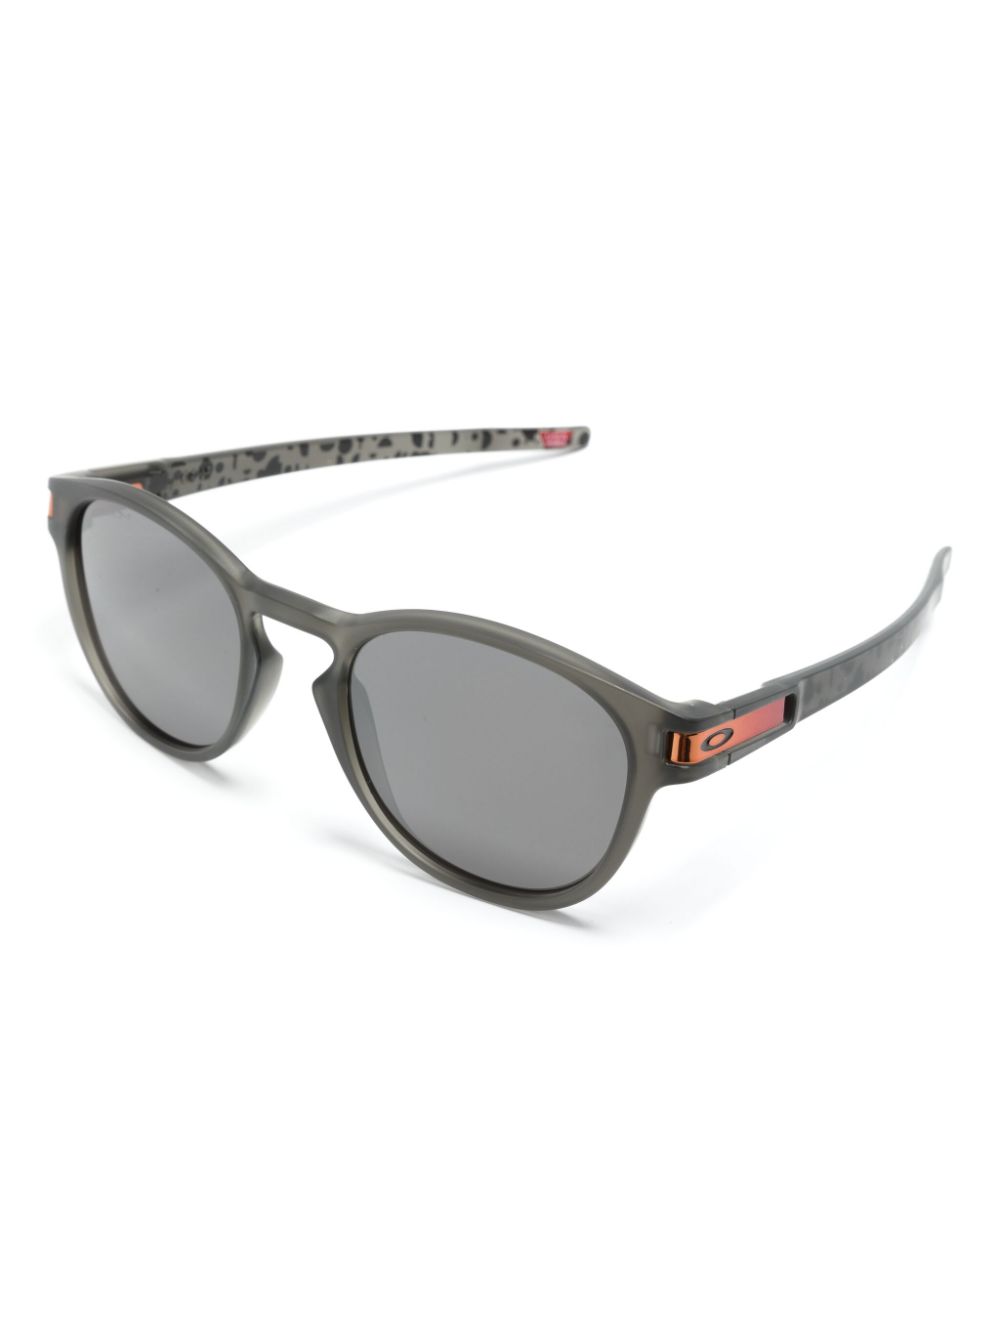 Latch round-frame sunglasses<BR/><BR/><BR/>